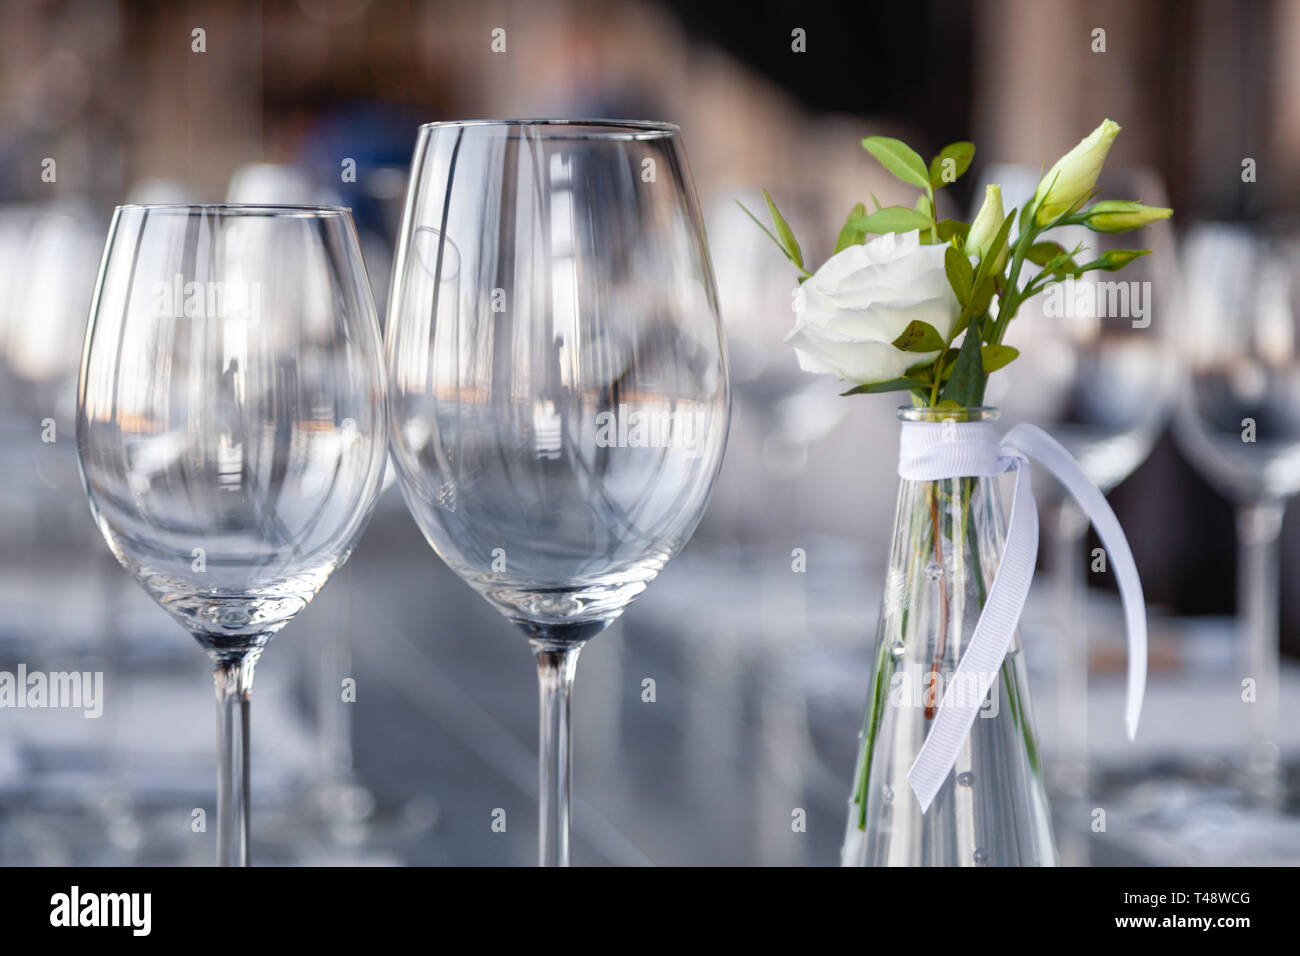 Restaurant moderne, verre vase avec bouquet de fleurs sur table dans un  restaurant. Vin et verres à eau position sur table en bois. Birt, banquet  Concept Photo Stock - Alamy